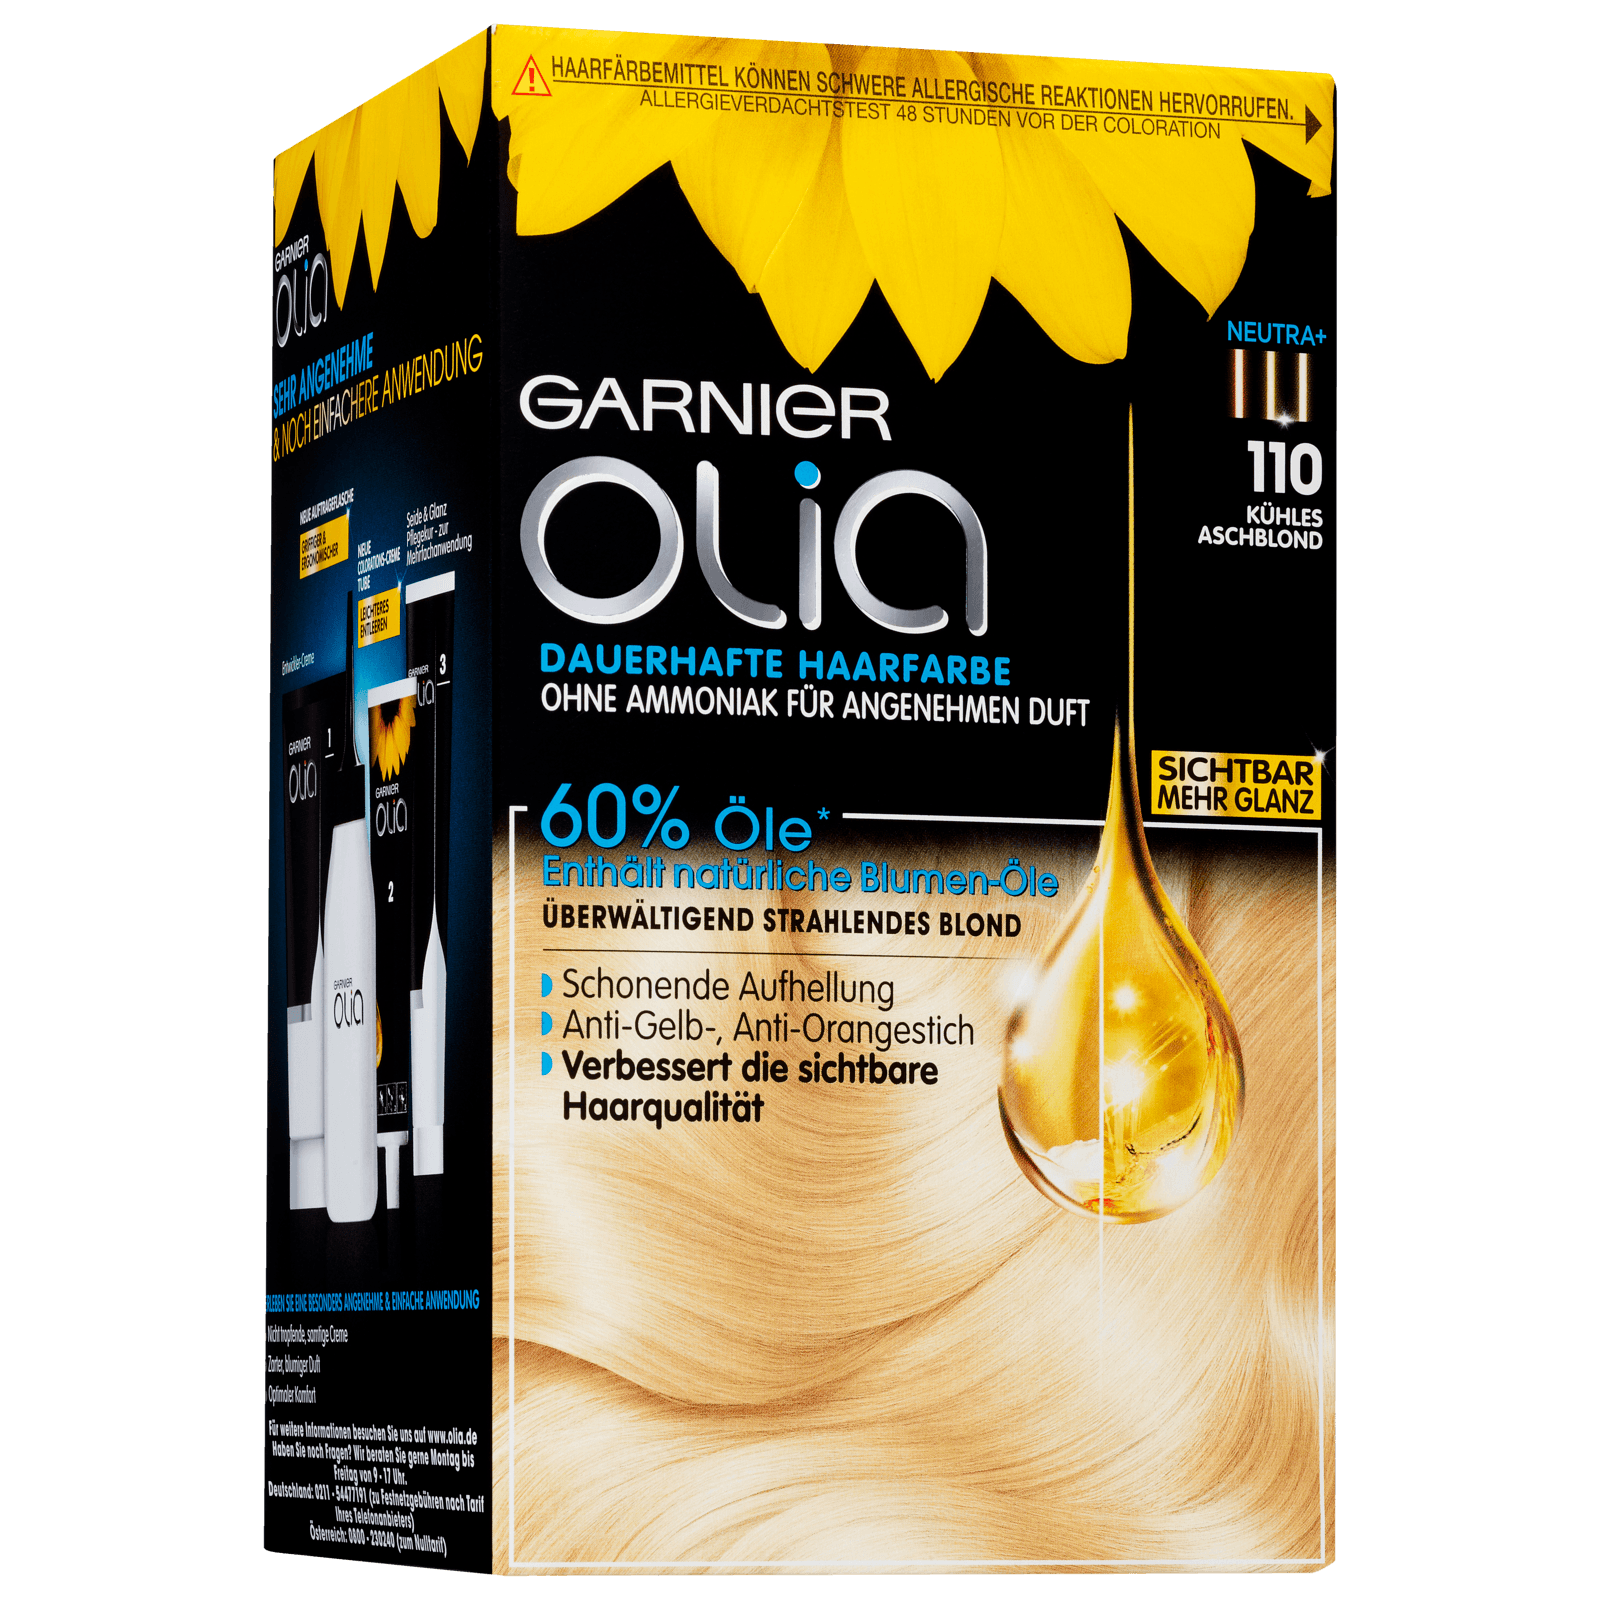 Garnier Haarfarbe bei Olia bestellen! online 110 REWE kühles aschblond Dauerhafte